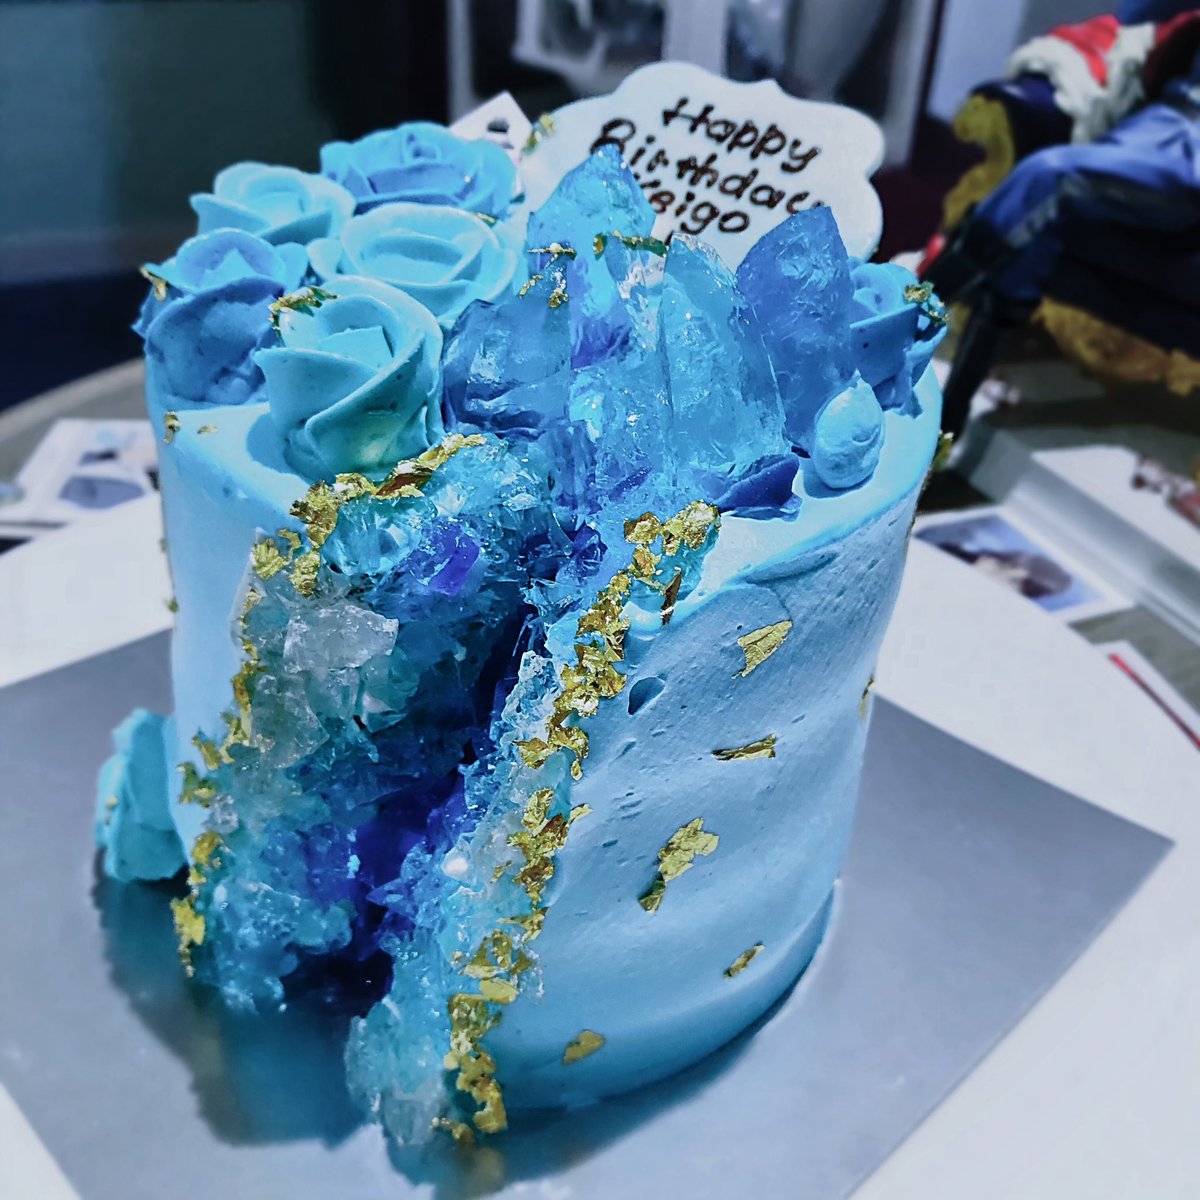 うき 今年のケーキです フルオーダーリベンジ 水晶ケーキ を見たときに可愛くて 氷の世界みたいだなって思ってお願いしてみたかったものを実現してくださって本当に感謝です パティシエさんはすごい 綺麗だよ